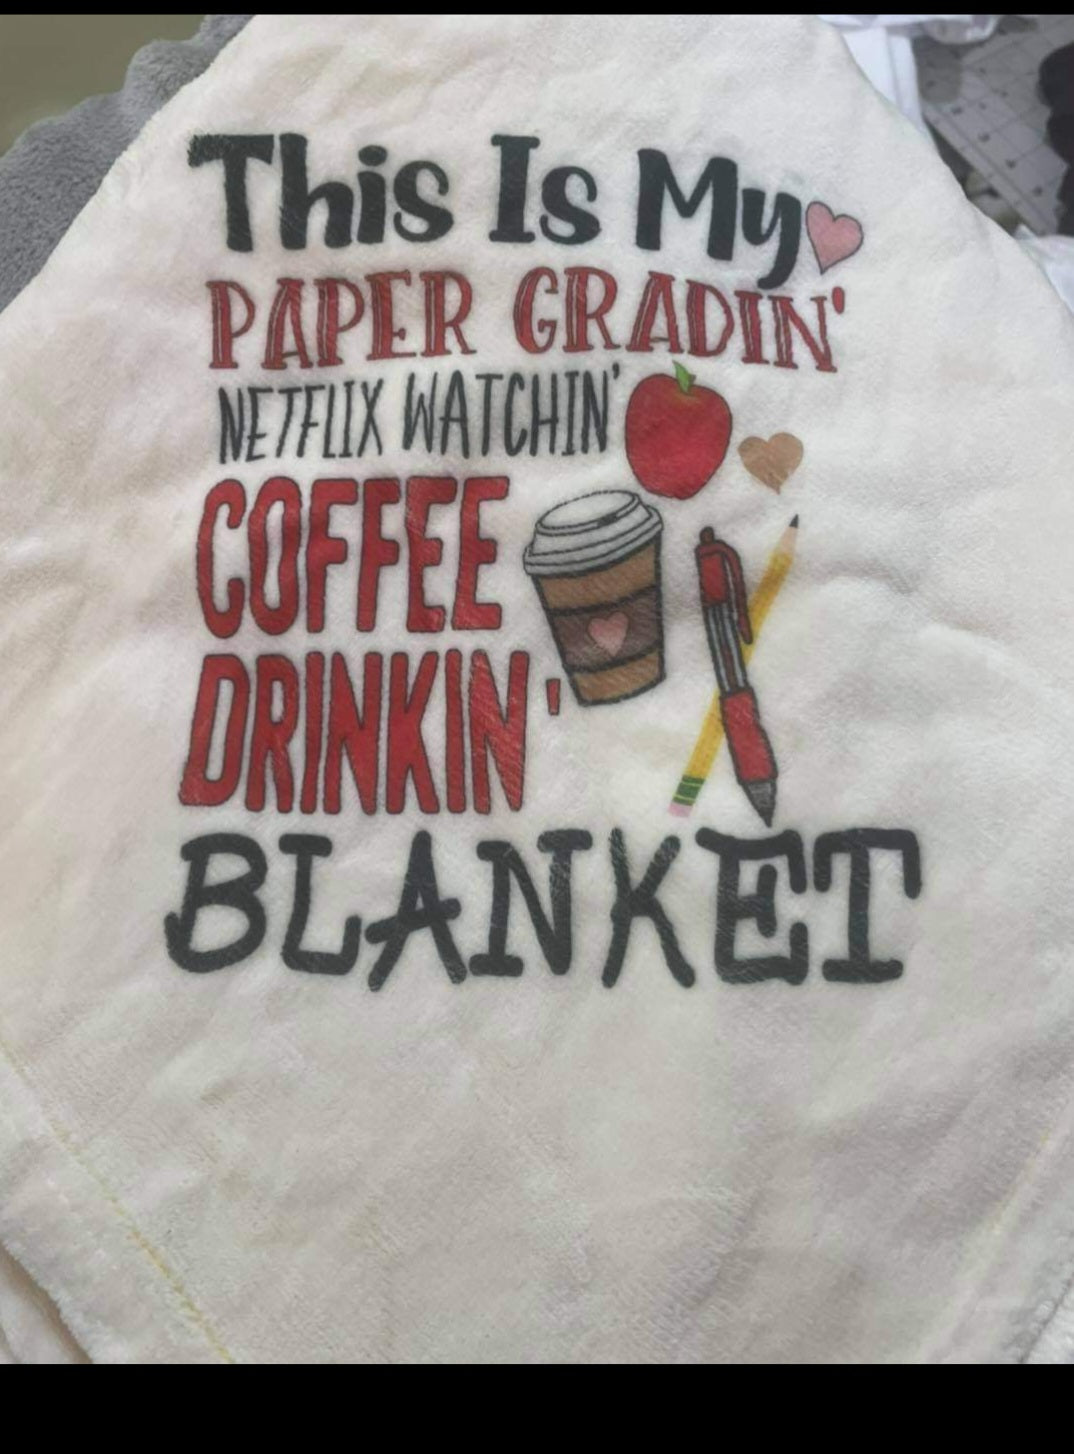 Teacher Gradin' Blanket